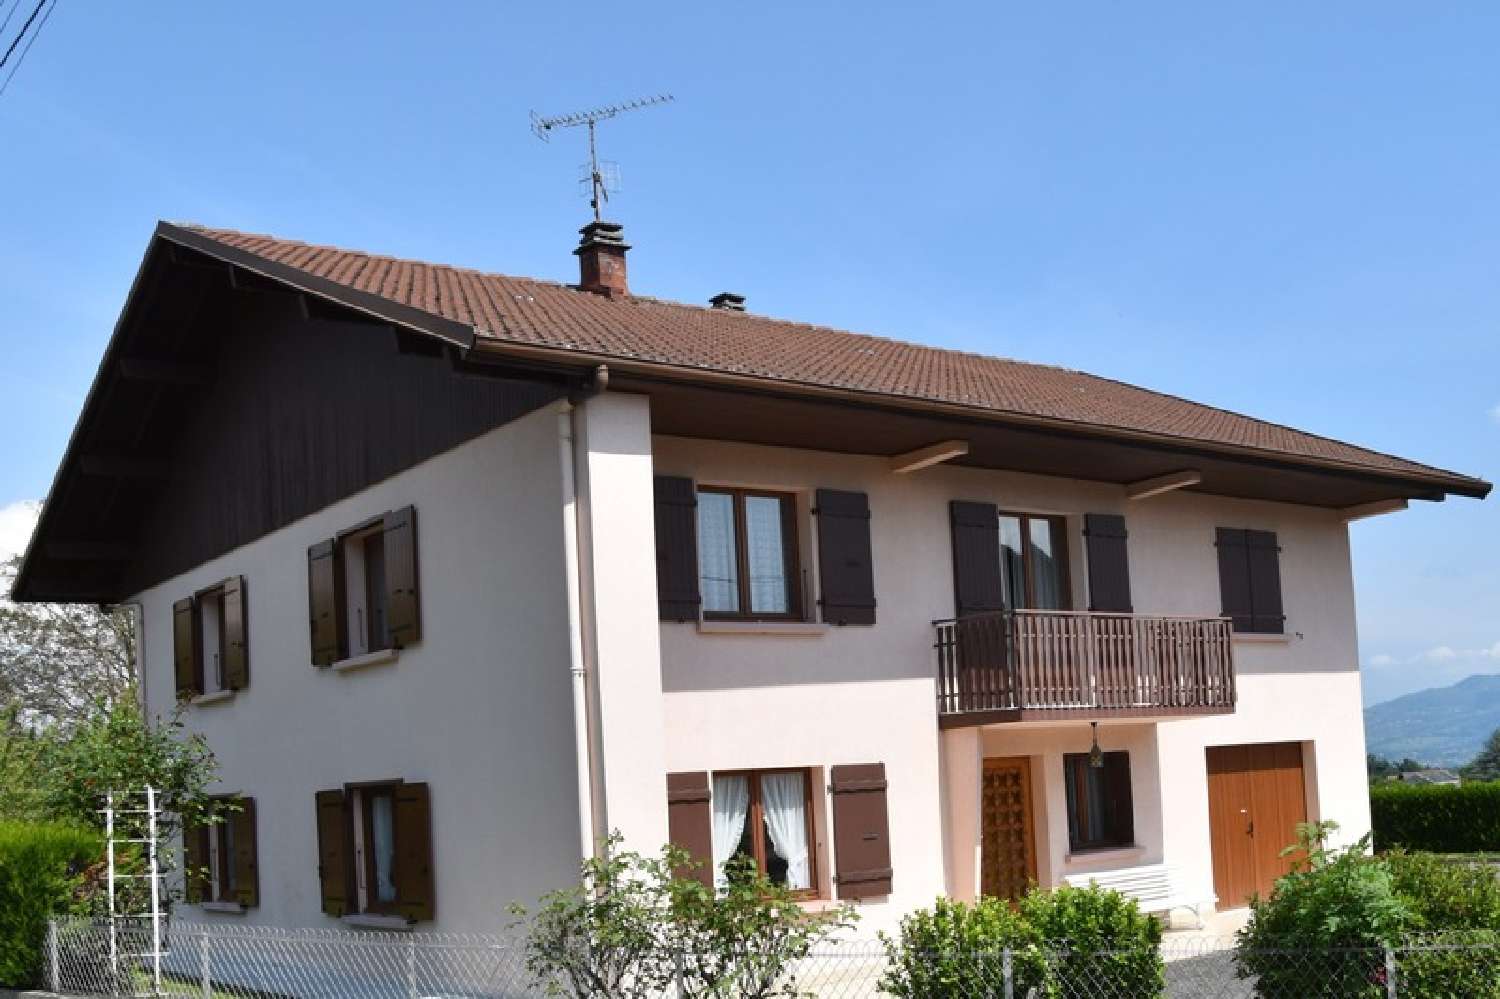  for sale house Cornier Haute-Savoie 2